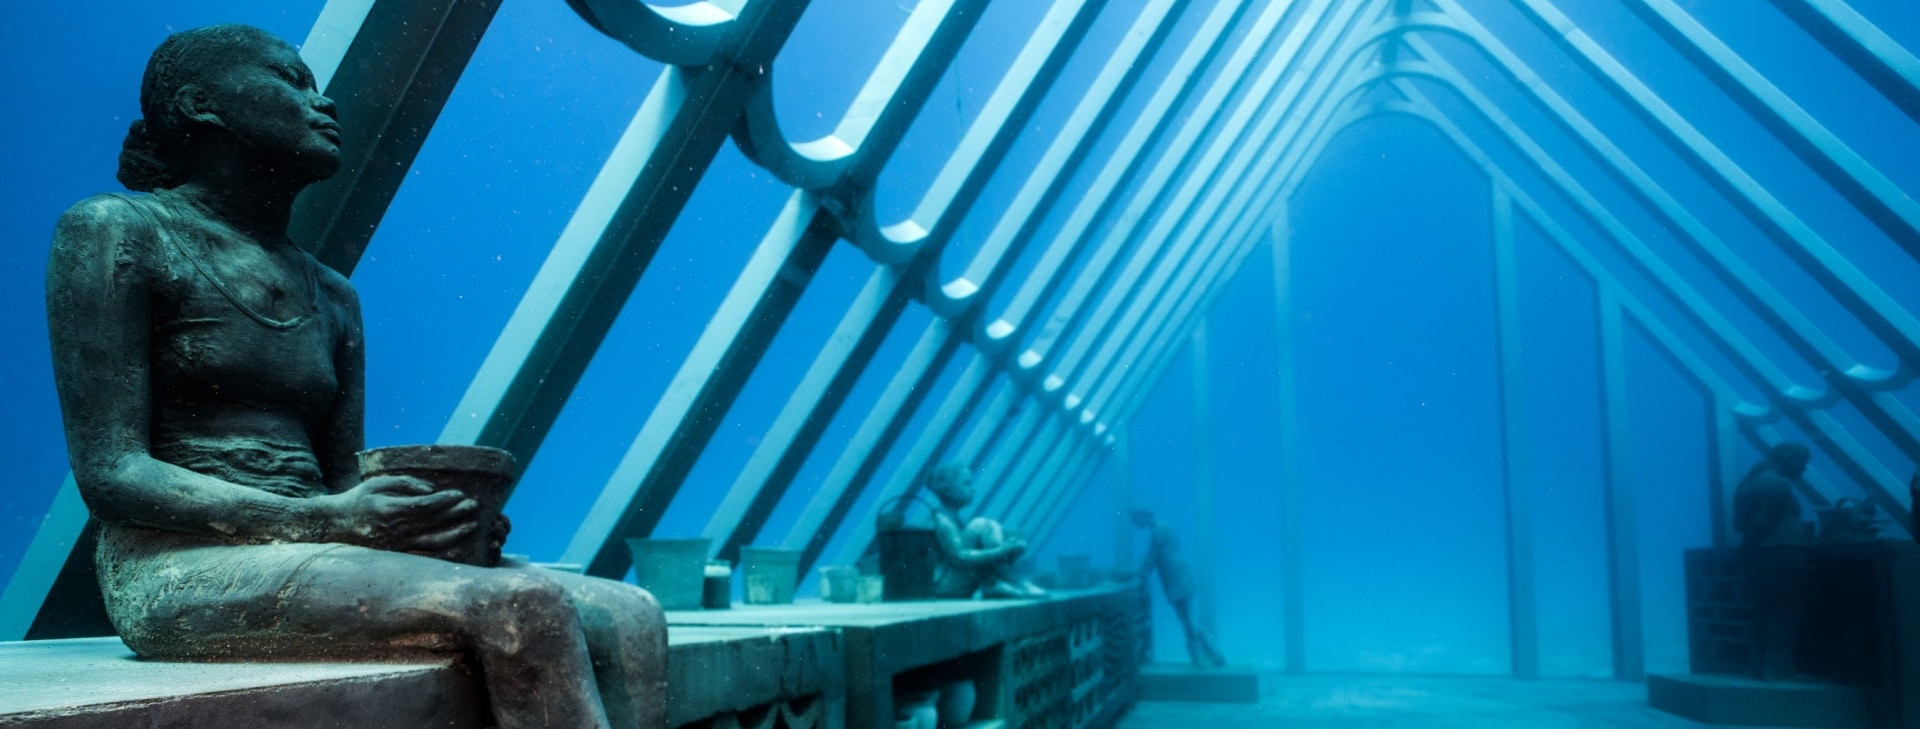 Exposition de sculptures sous-marines dans le Museum of Underwater Art près de Townsville © Matt Curnock